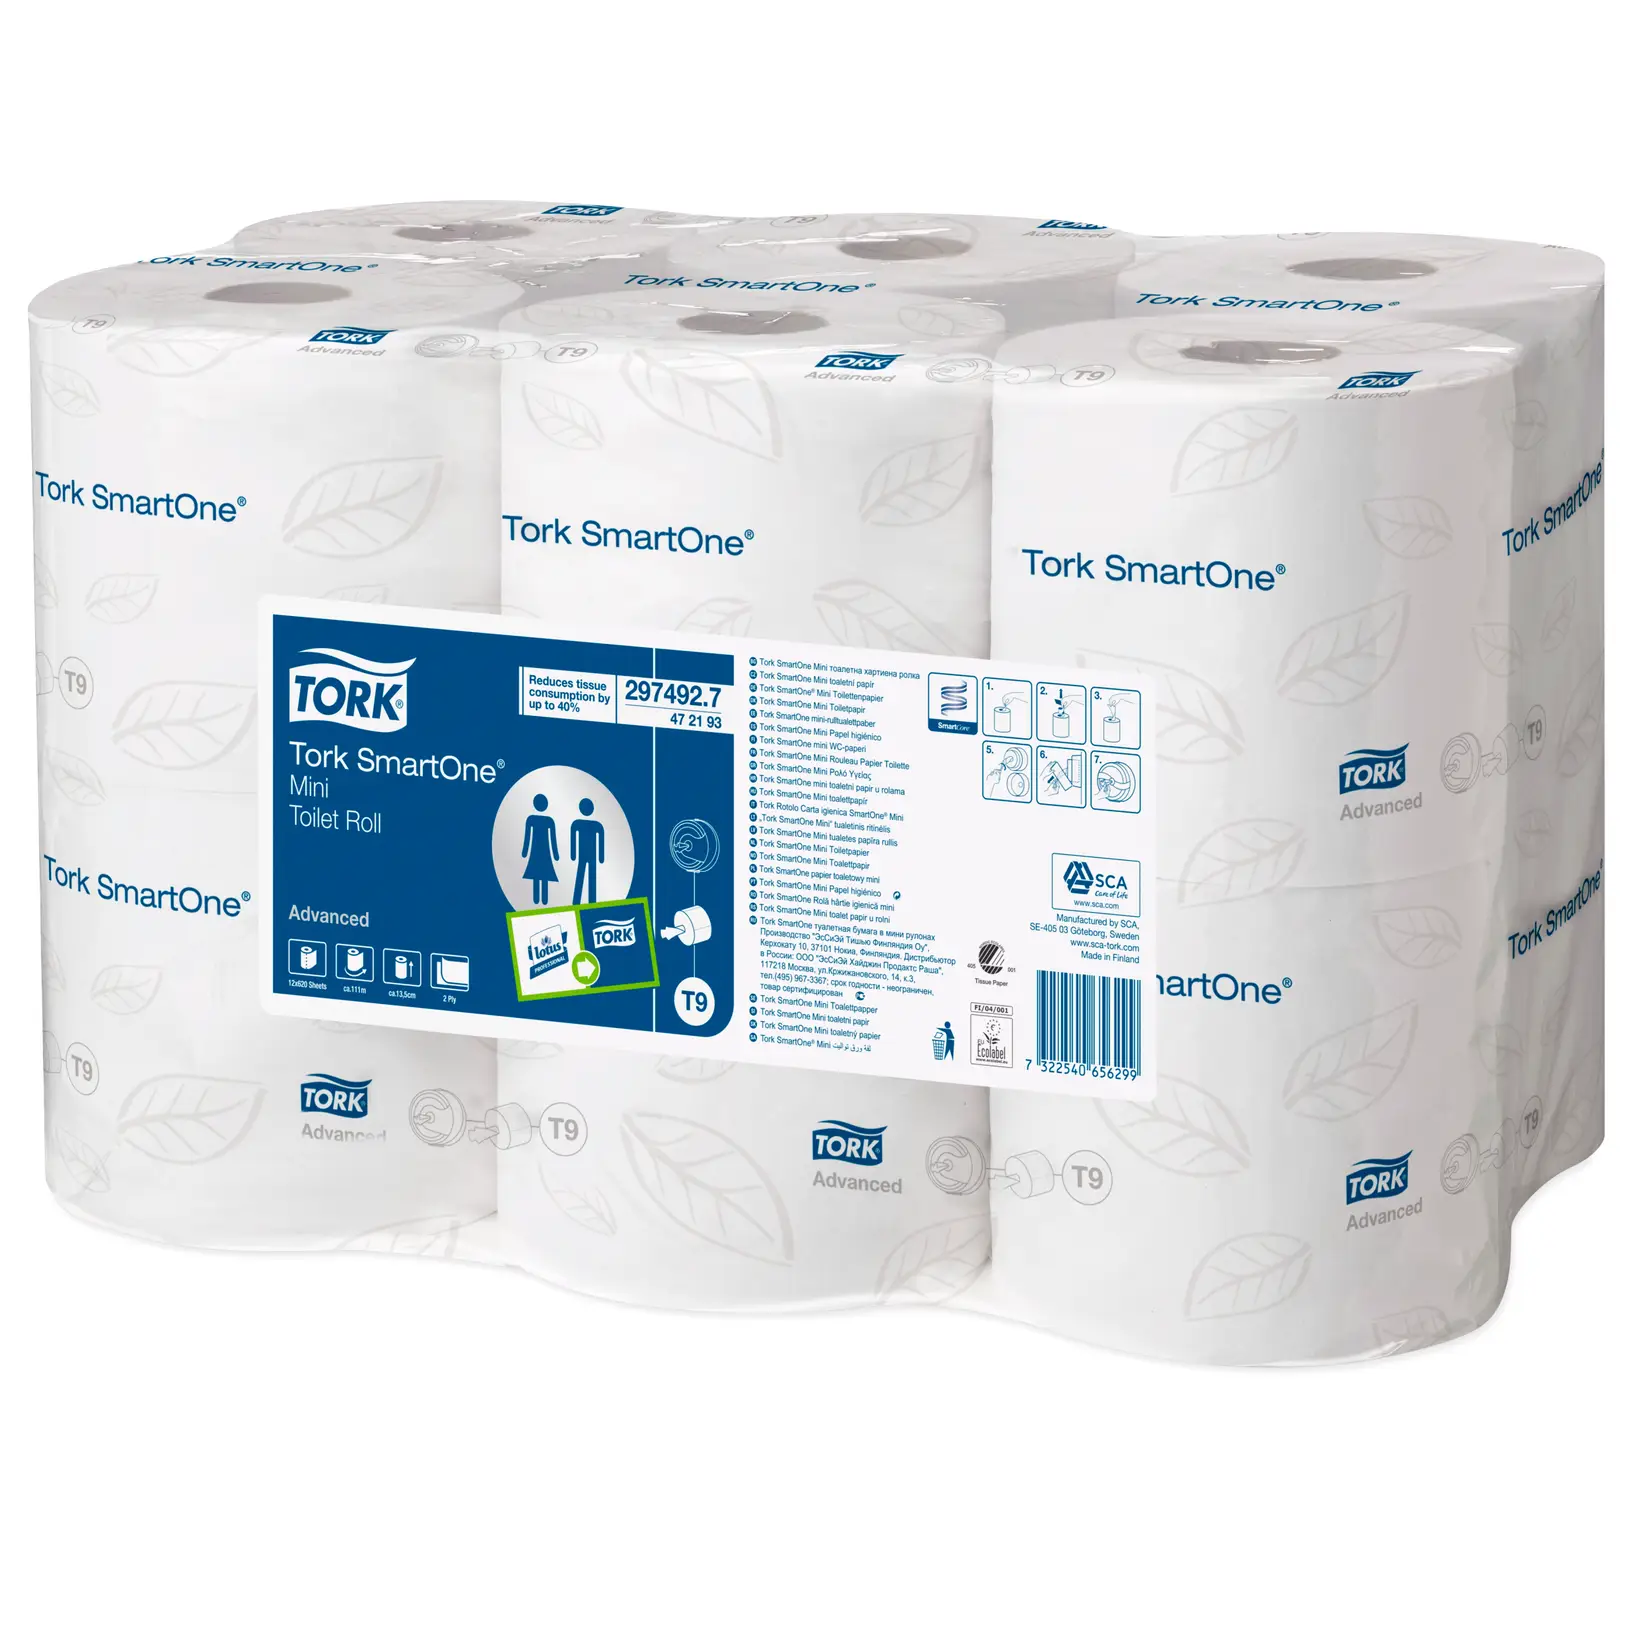 Toiletpapir 472193 SmartOne T9 Advanced 2-lag 12 ruller - Køb billigt på Grafical.dk